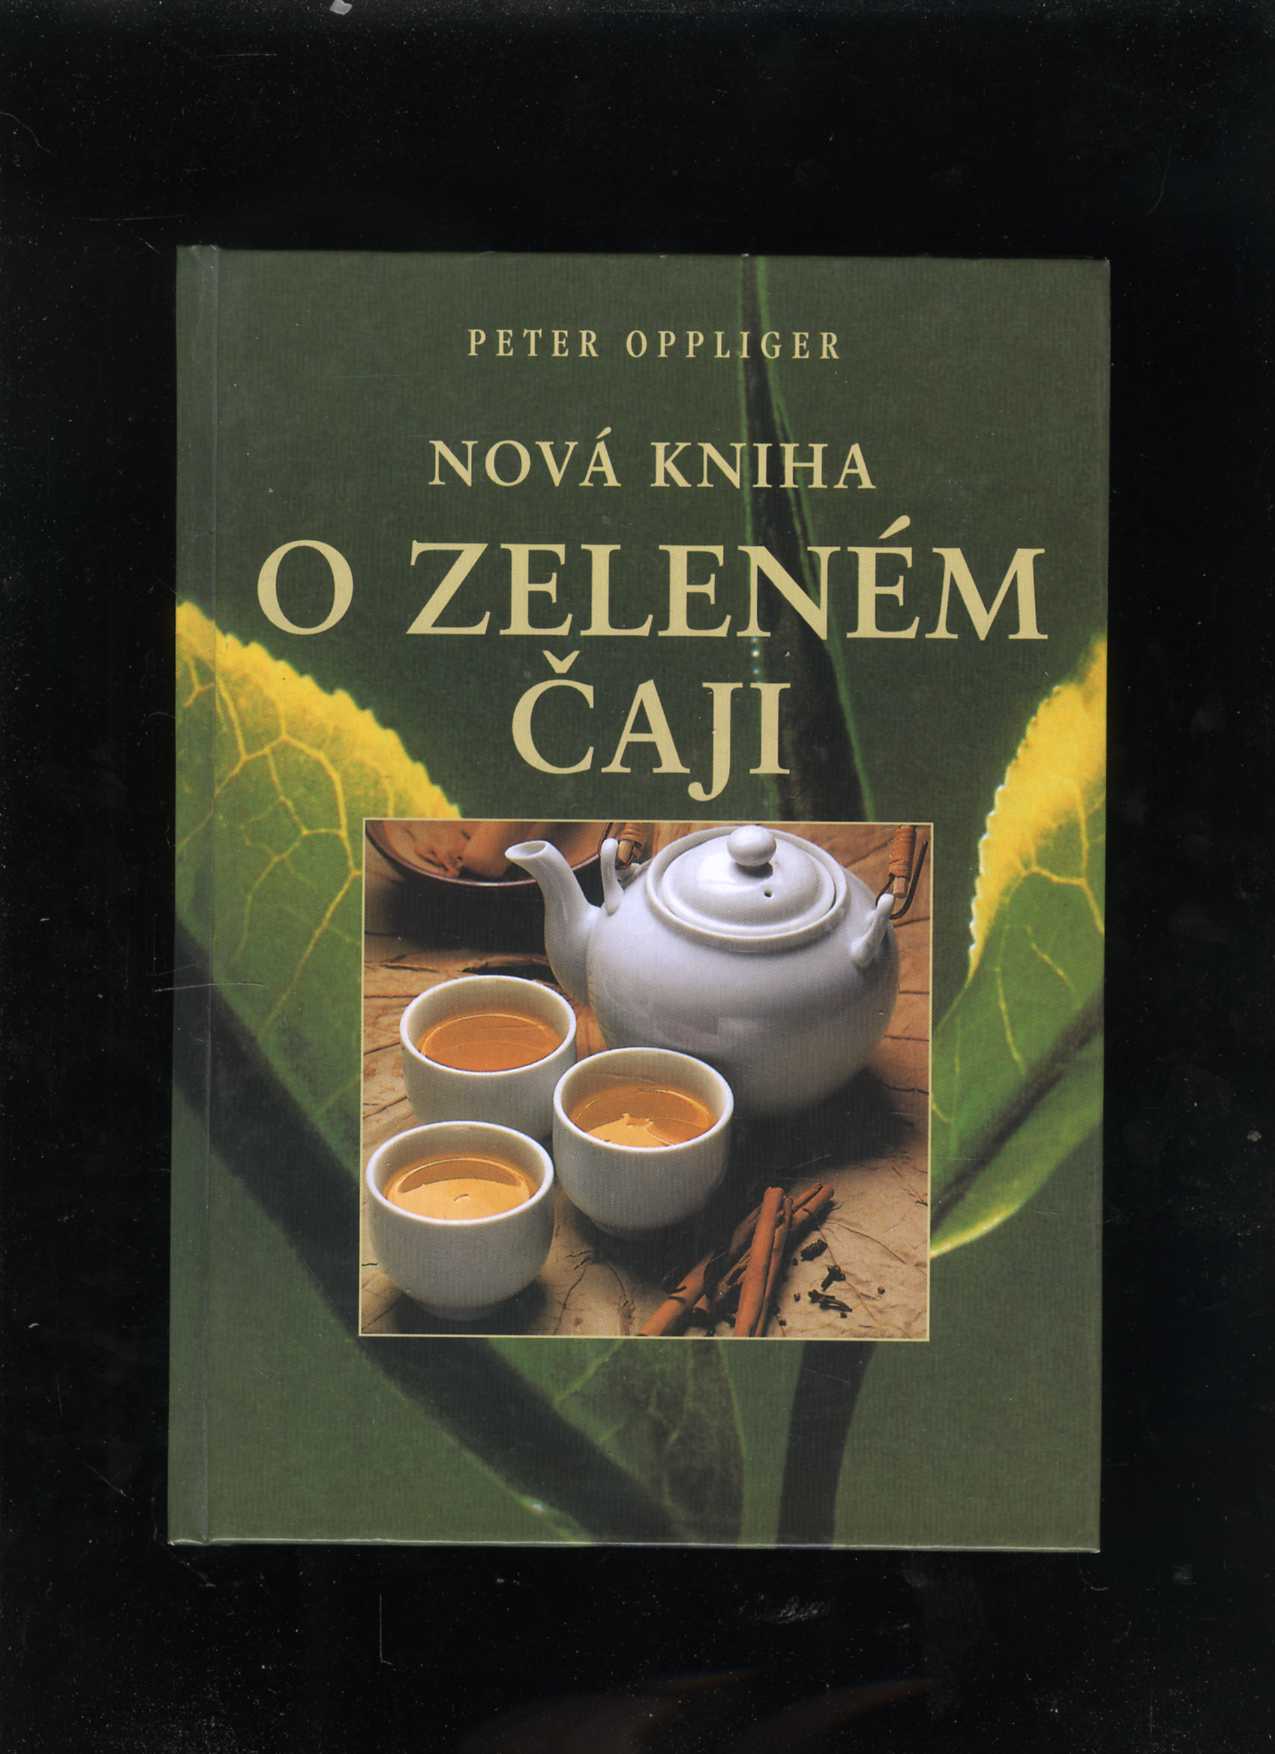 Nová kniha o zeleném čaji (Peter Oppliger)